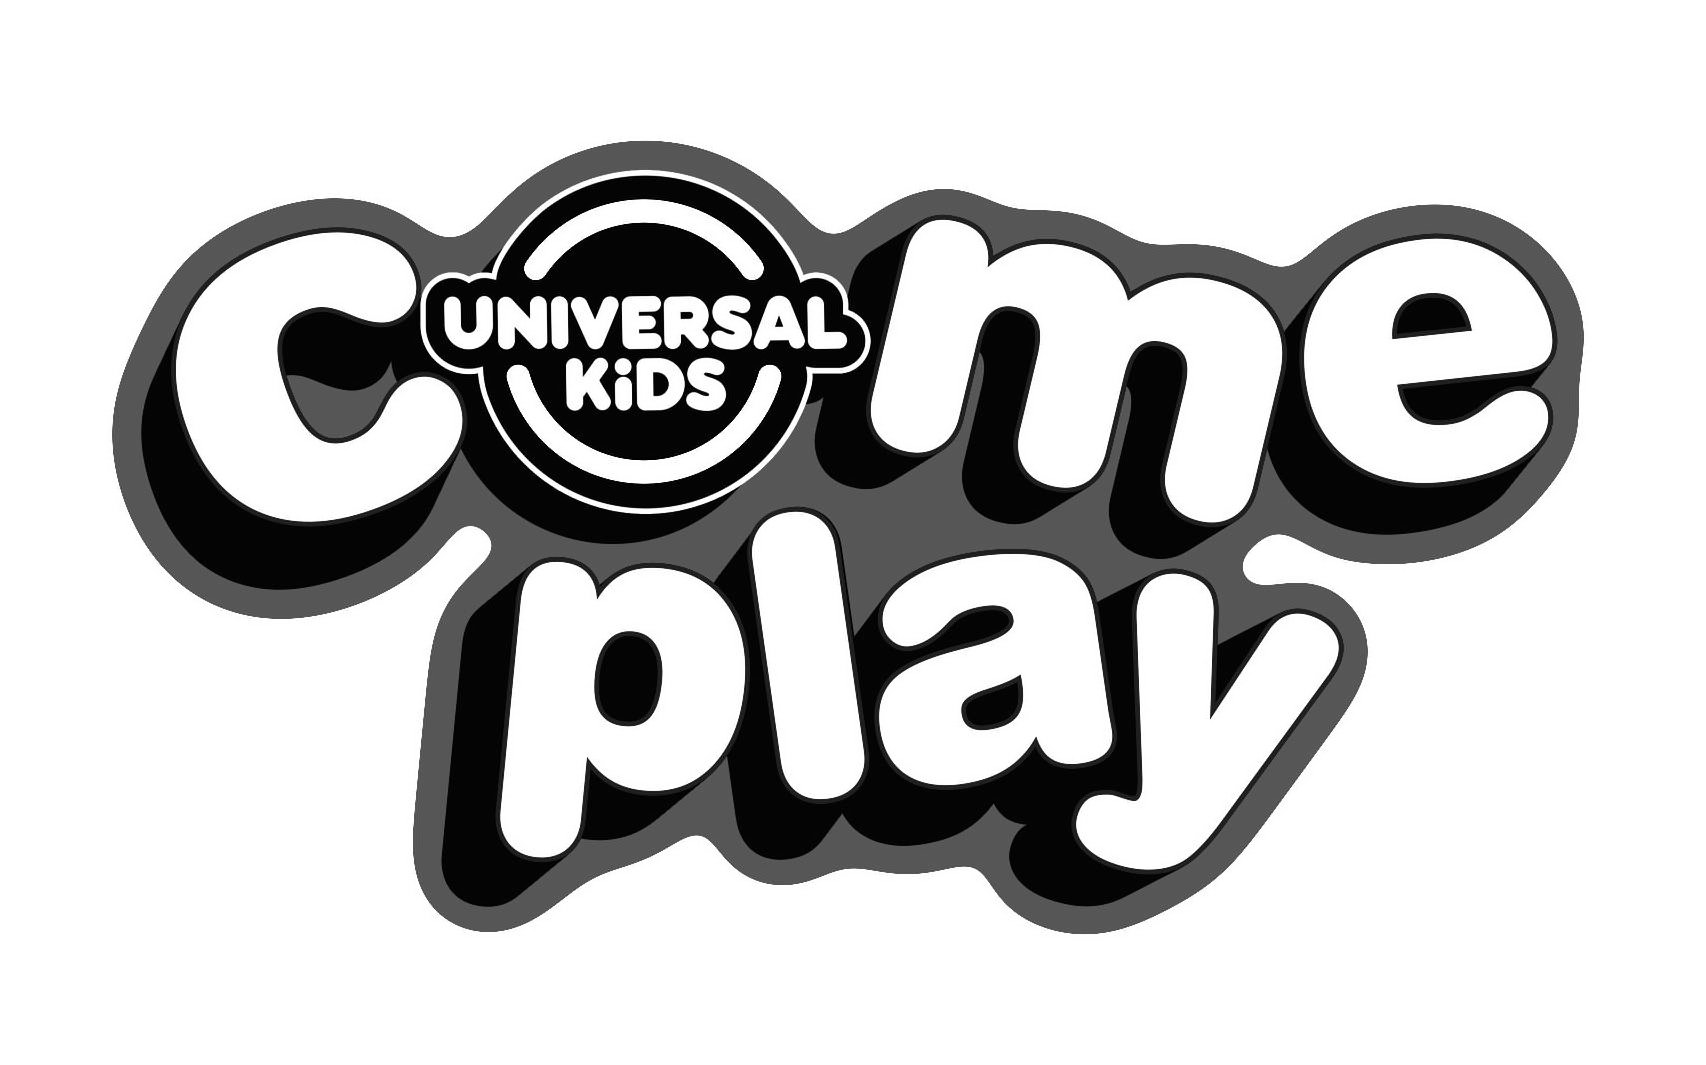  COME PLAY UNIVERSAL KIDS